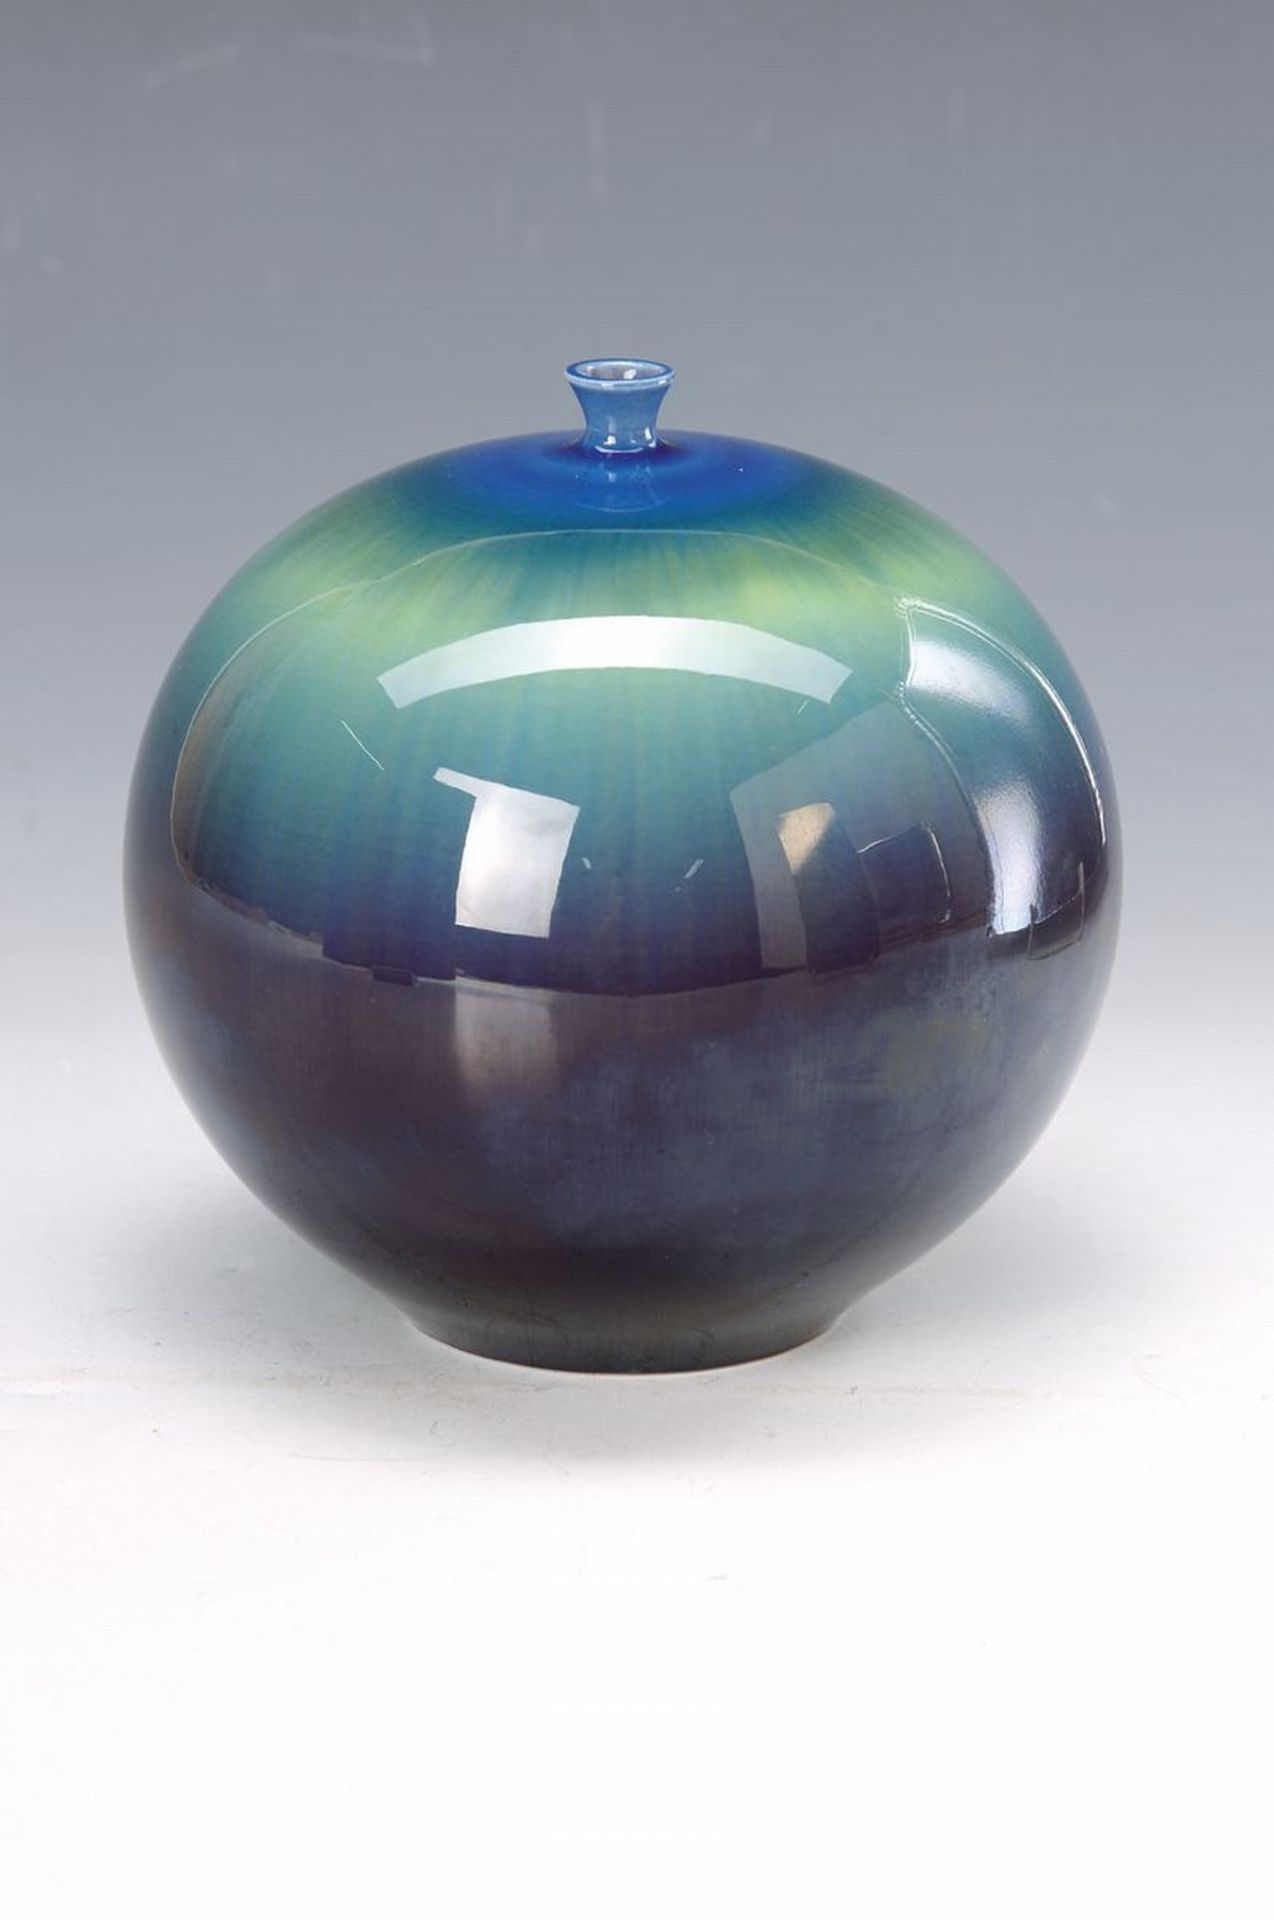 Vase von Masahiko Tokuda, 1933-2009, japanischer